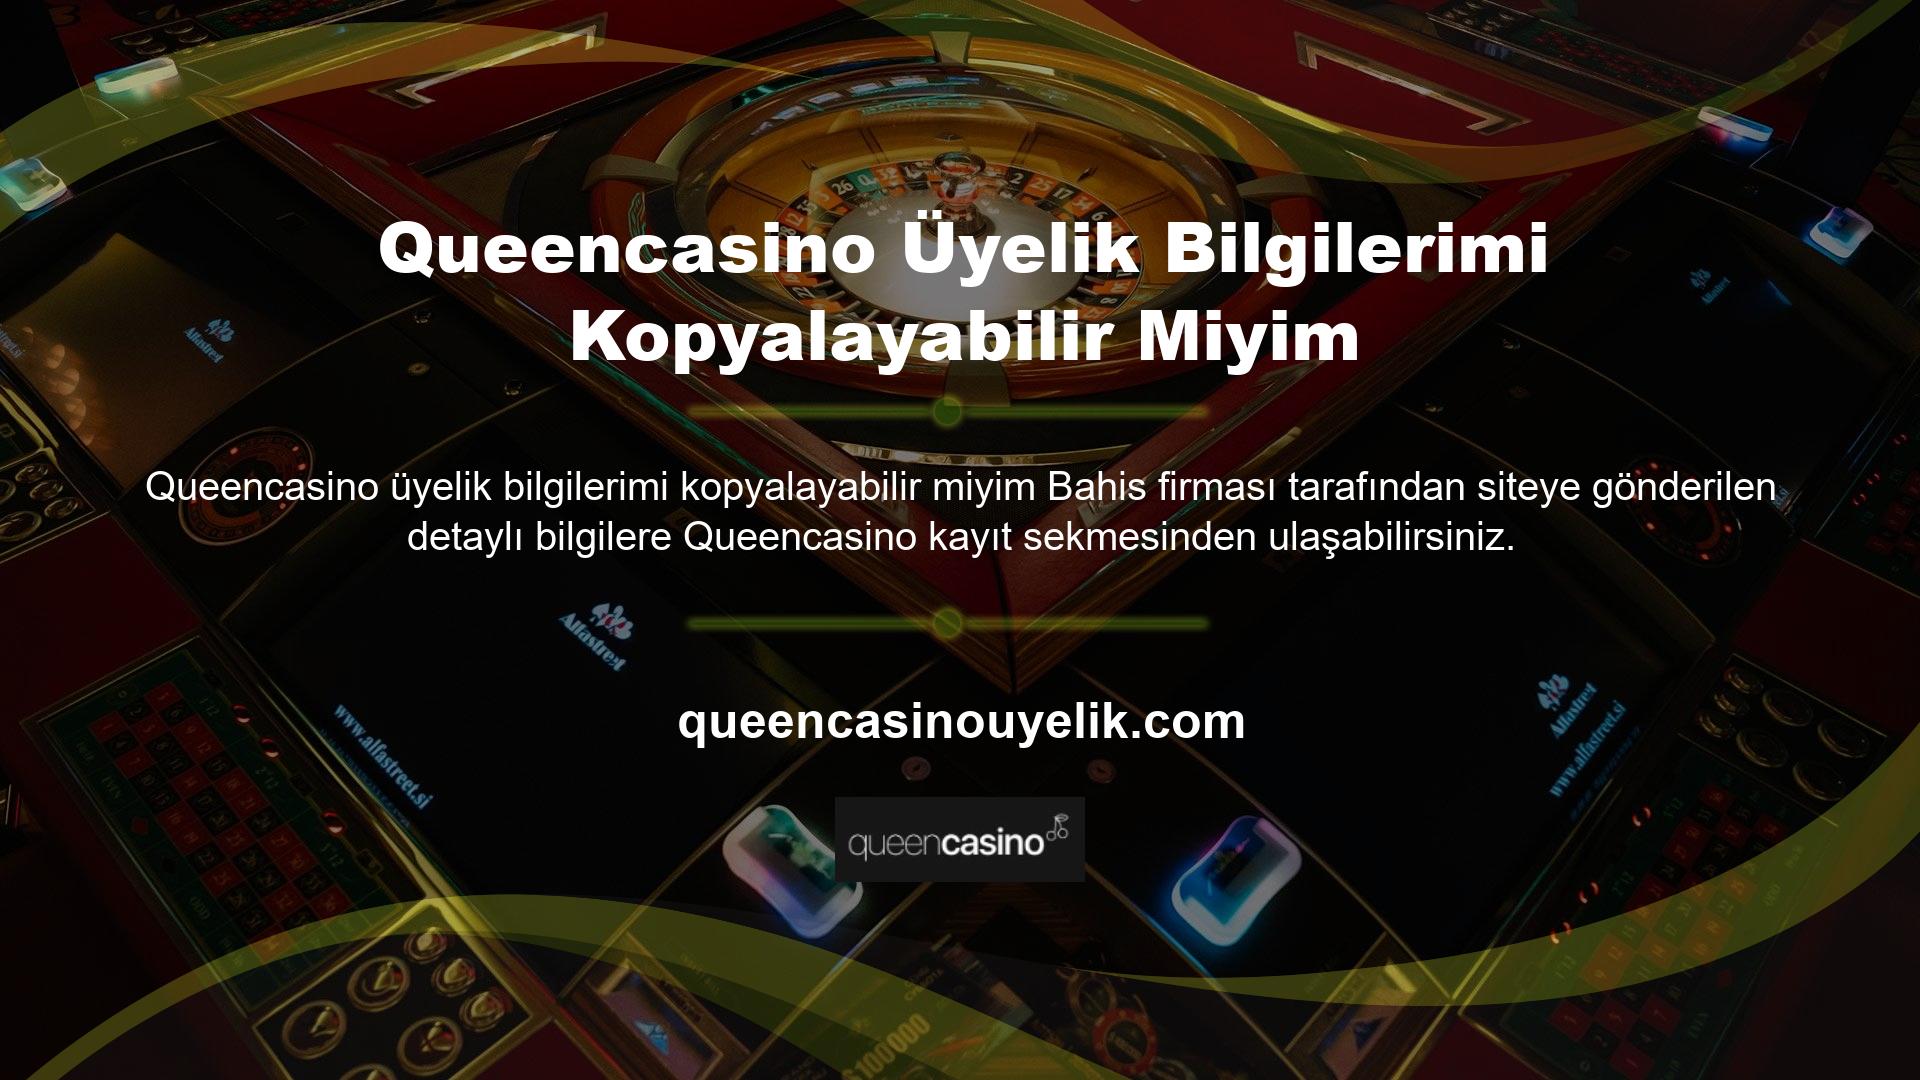 Bahis şirketi tarafından siteye gönderilen ayrıntılı veriler Queencasino kayıt sekmesinde bulunabilir